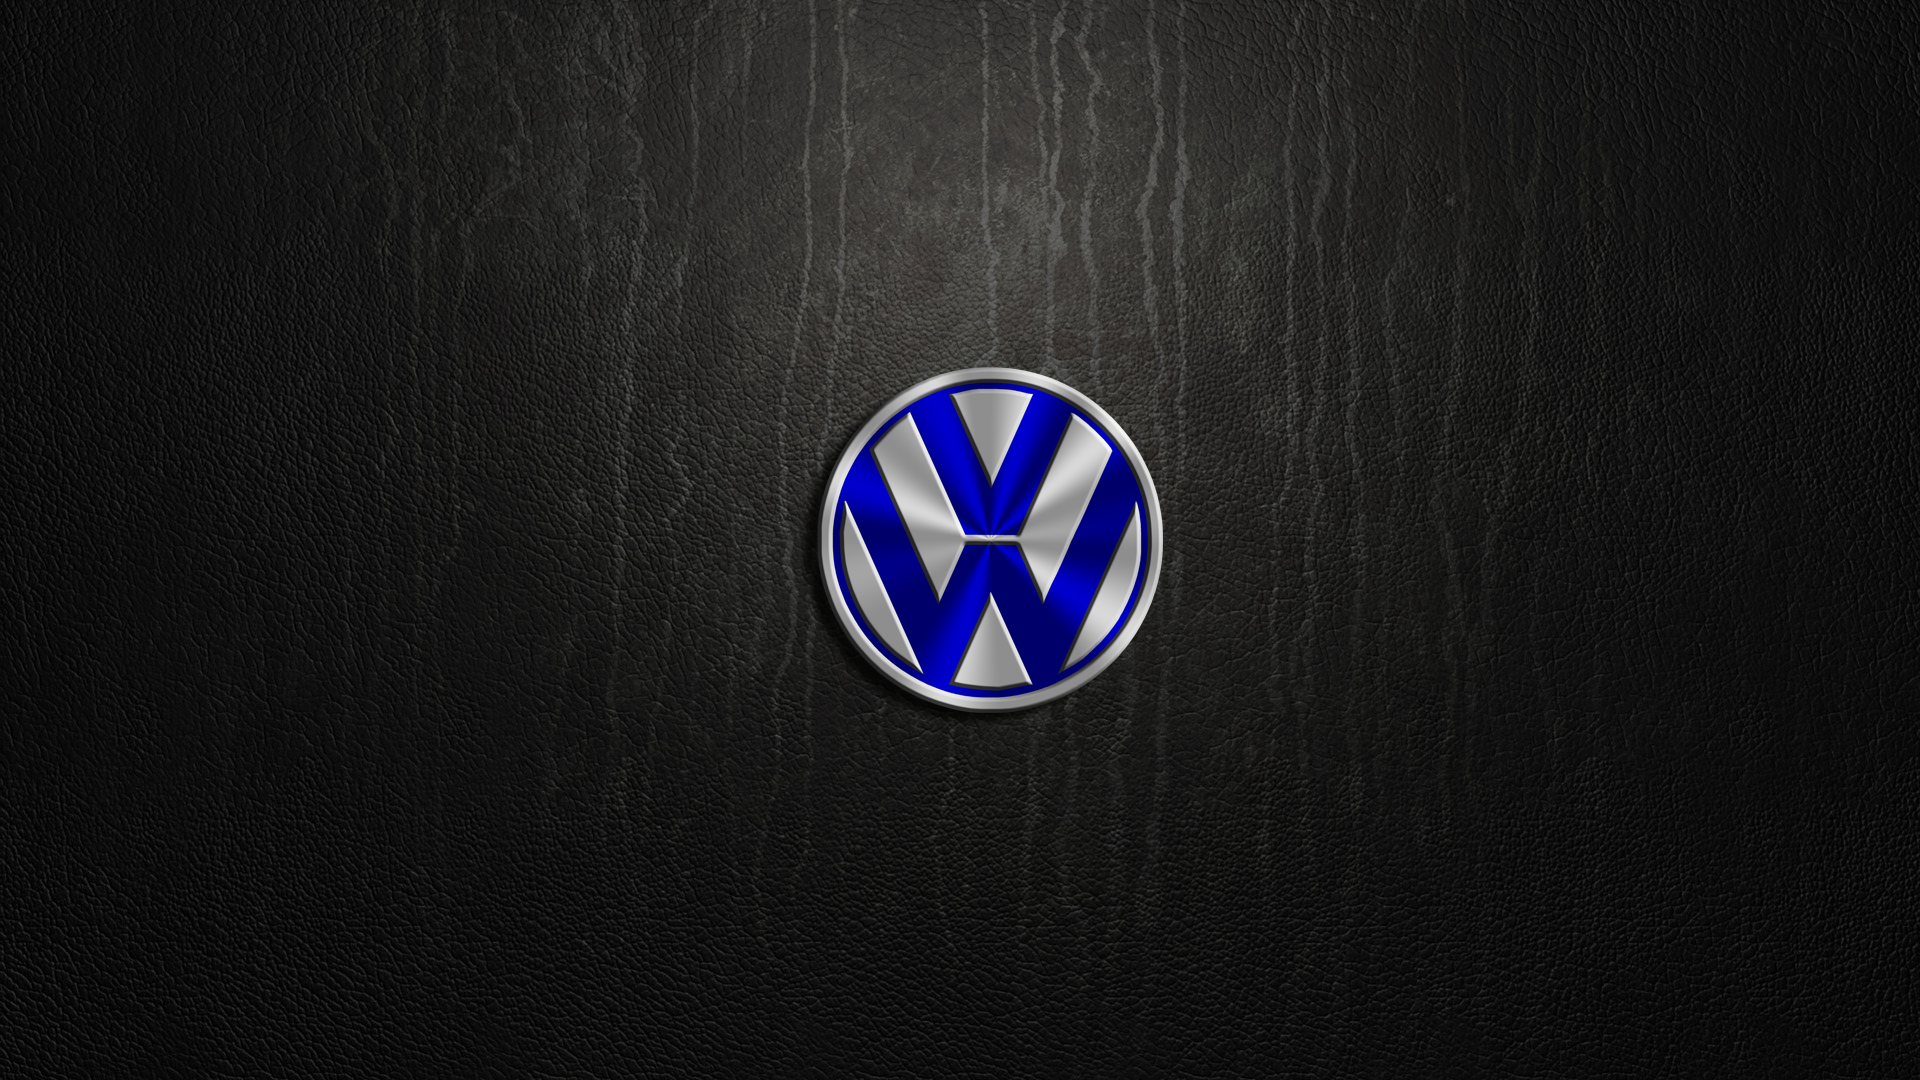 Volkswagen HD Wallpaper | Background Image | 1920x1080